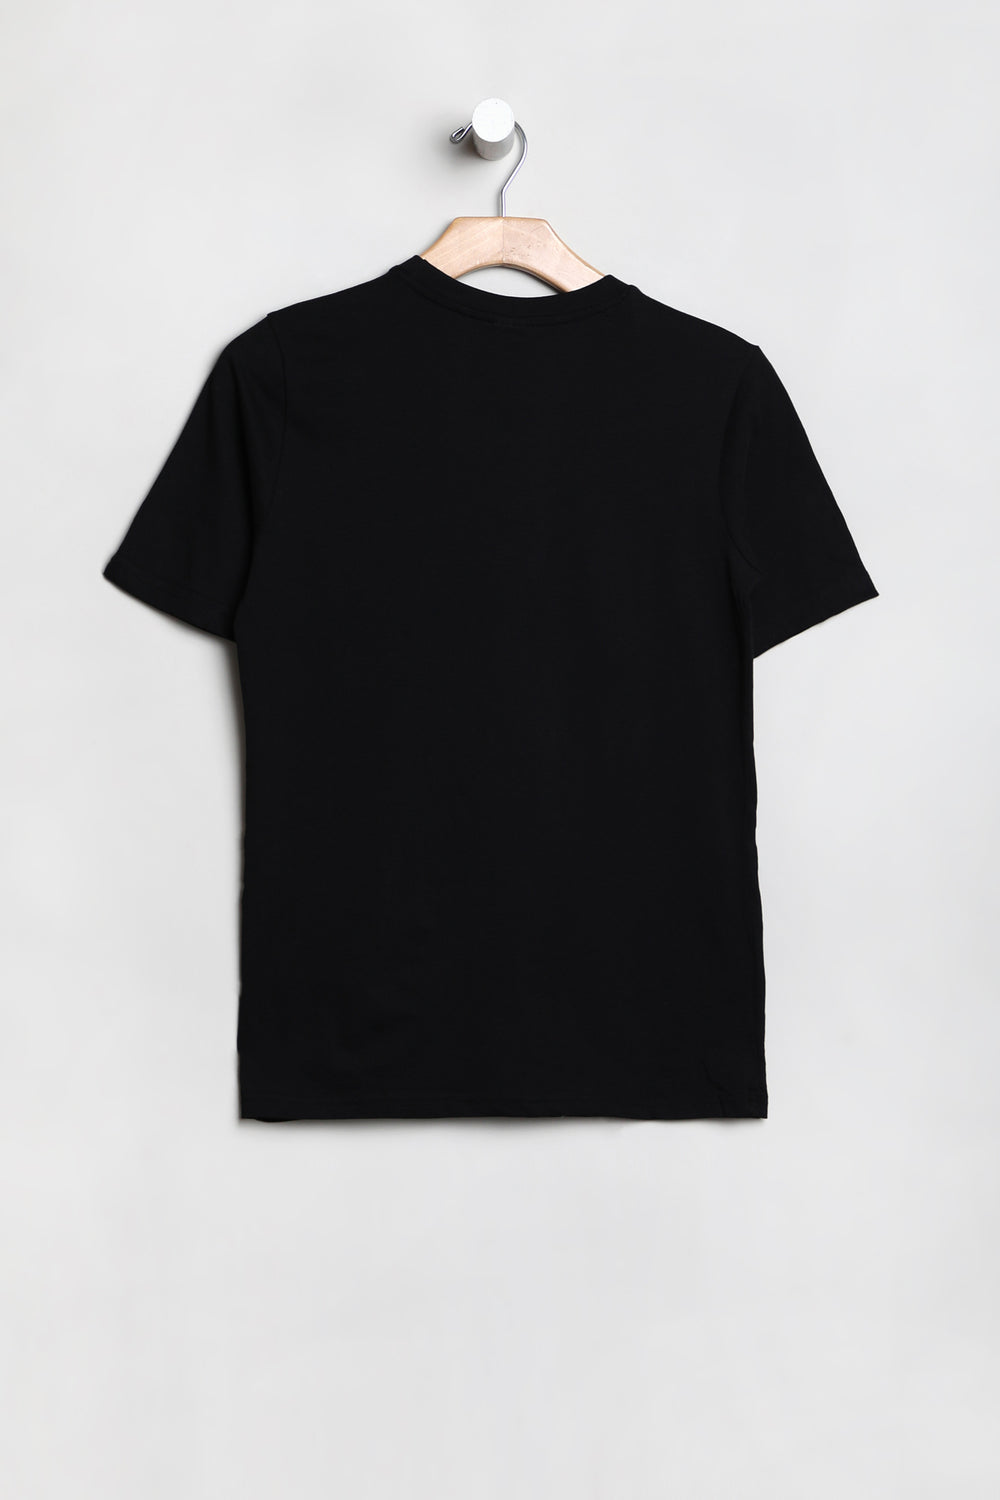 Youth Dragon Ball Z T-Shirt Black